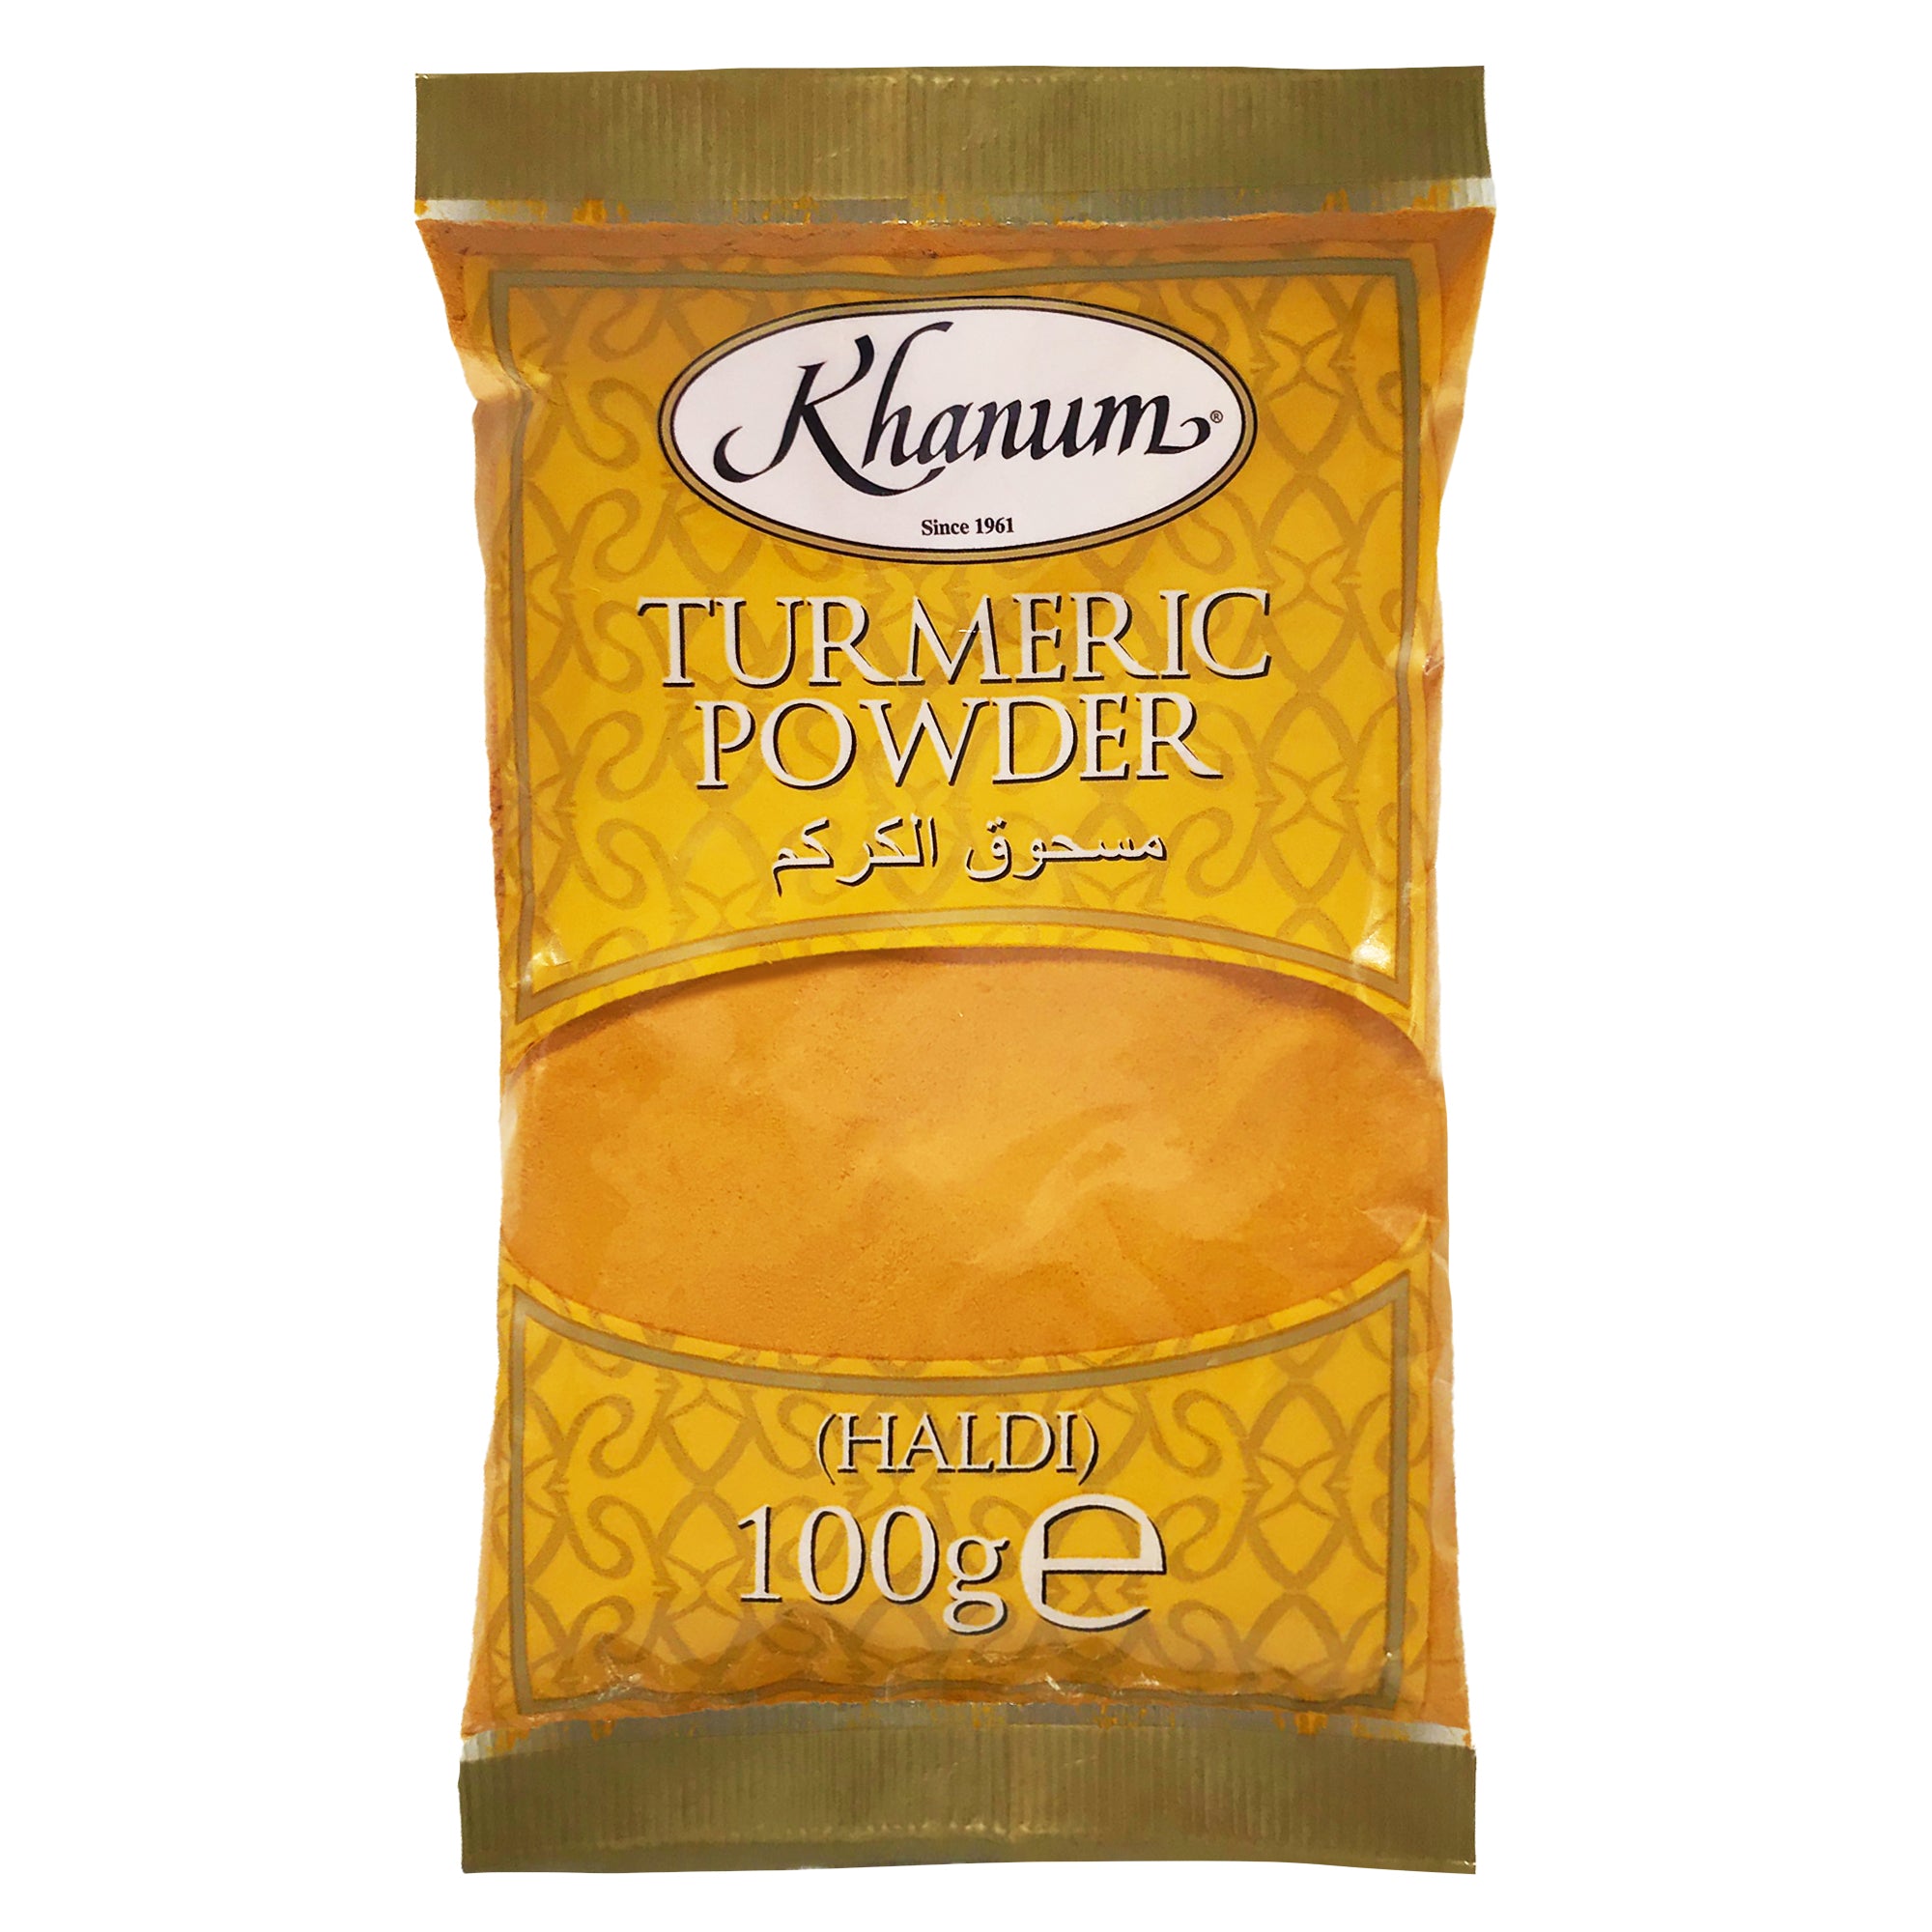 Khanum Turmeric Powder (HALDI) 20x100g